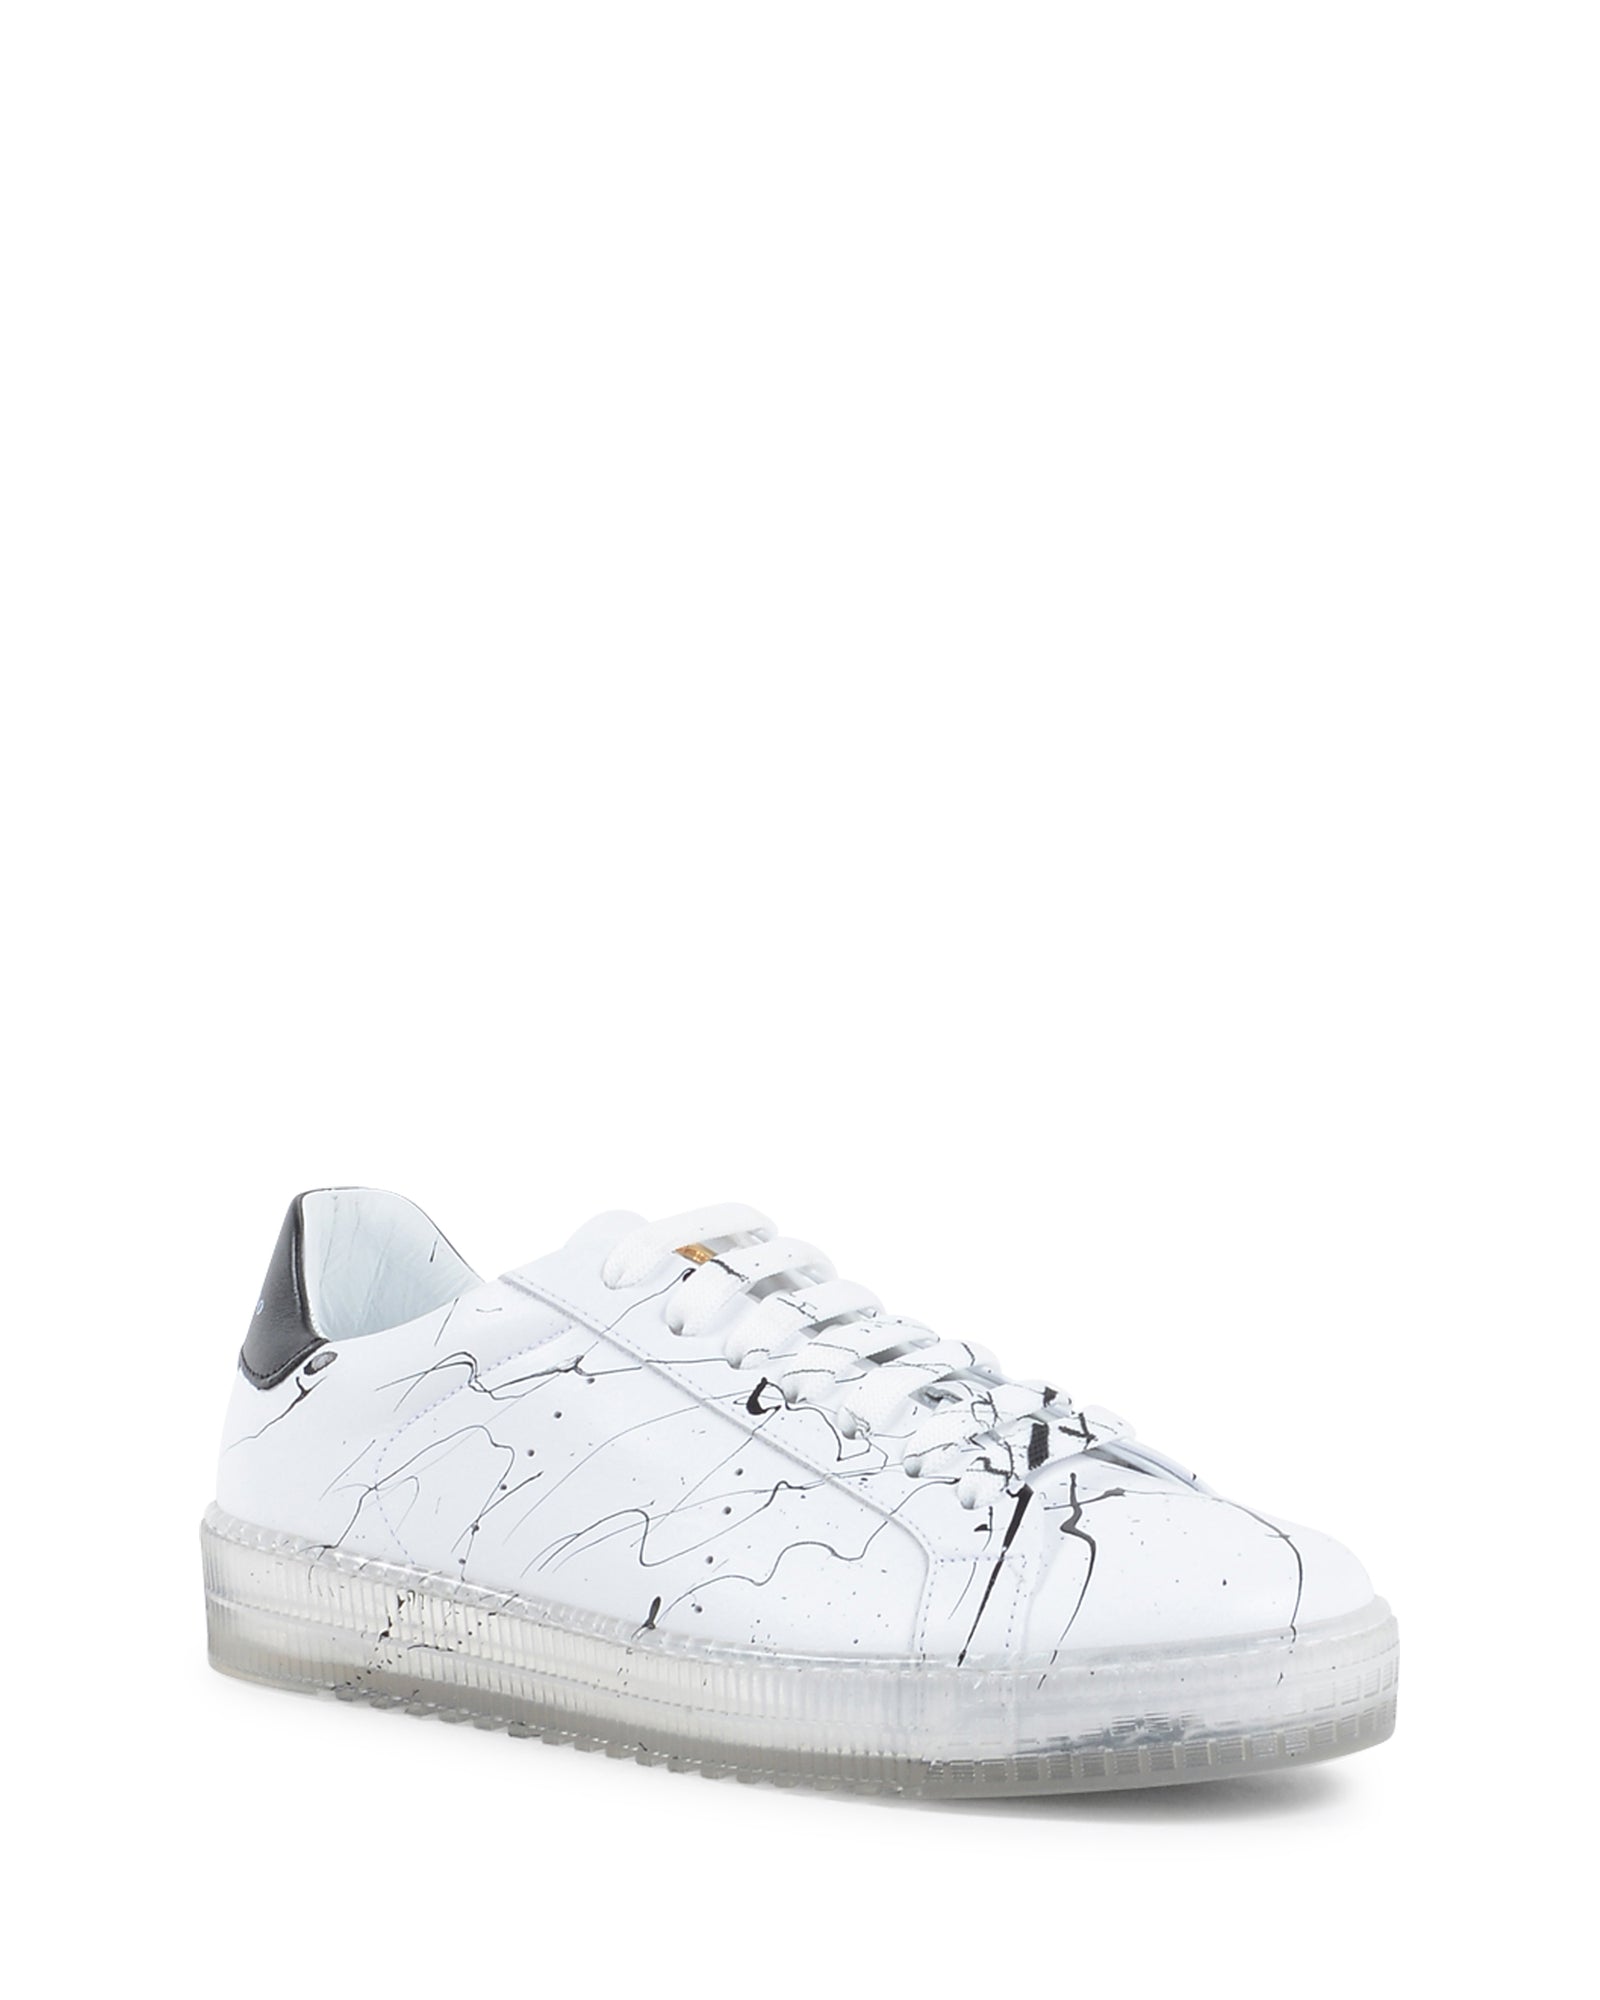 Splatter Sneaker - White Black